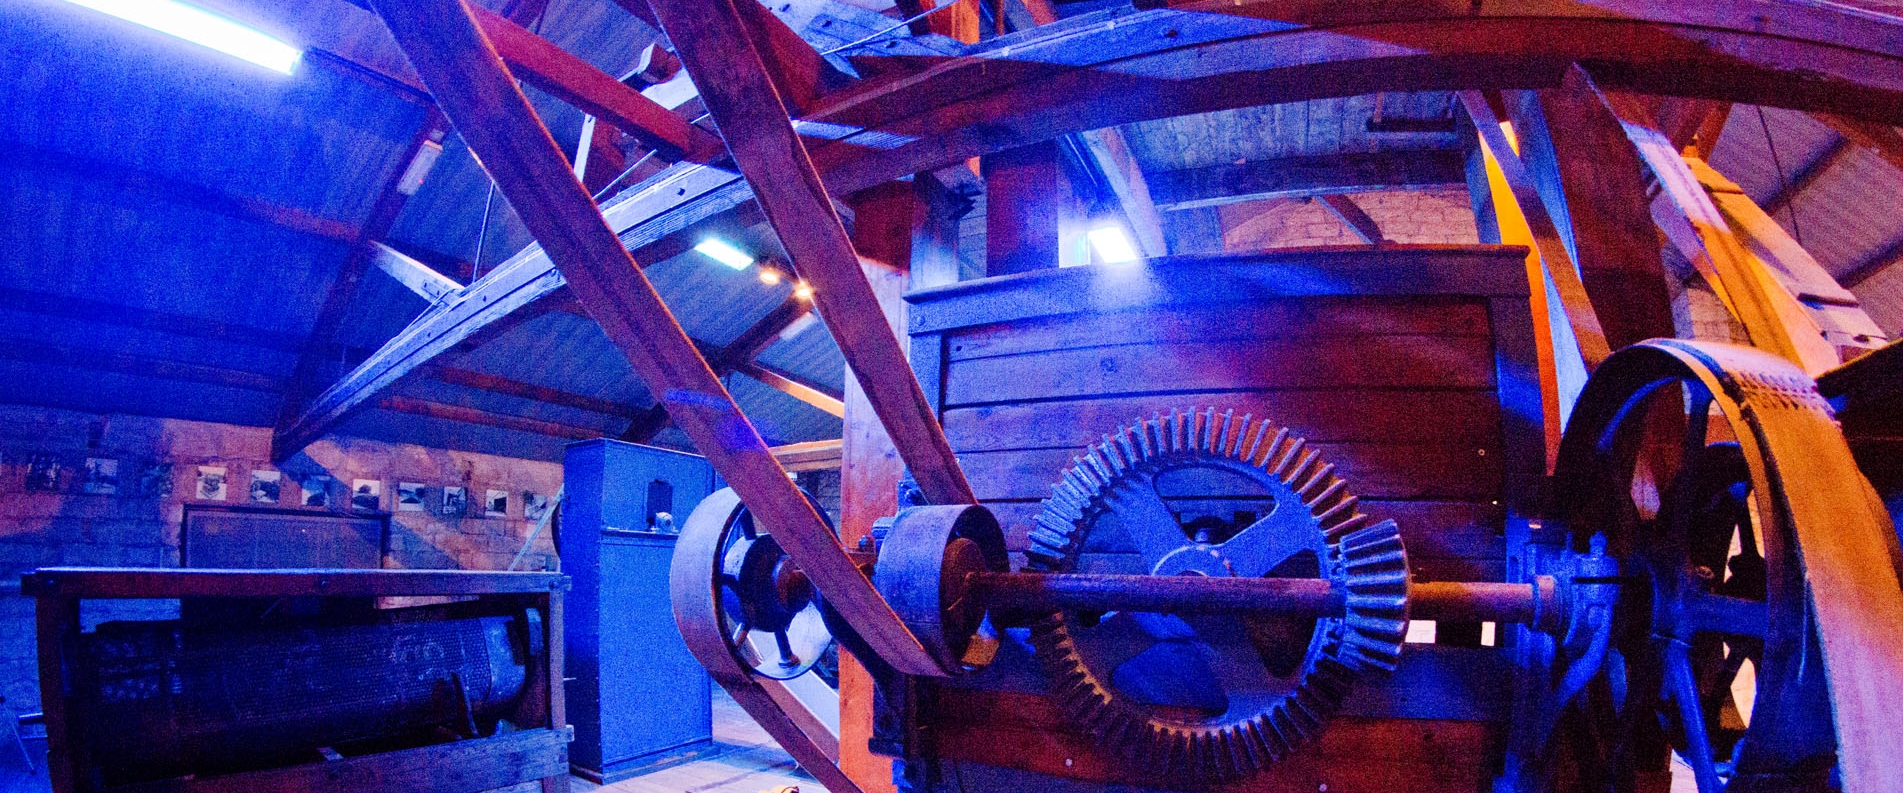 Музей рожкового дерева Carob Mill в Лимассоле, фоторепортаж